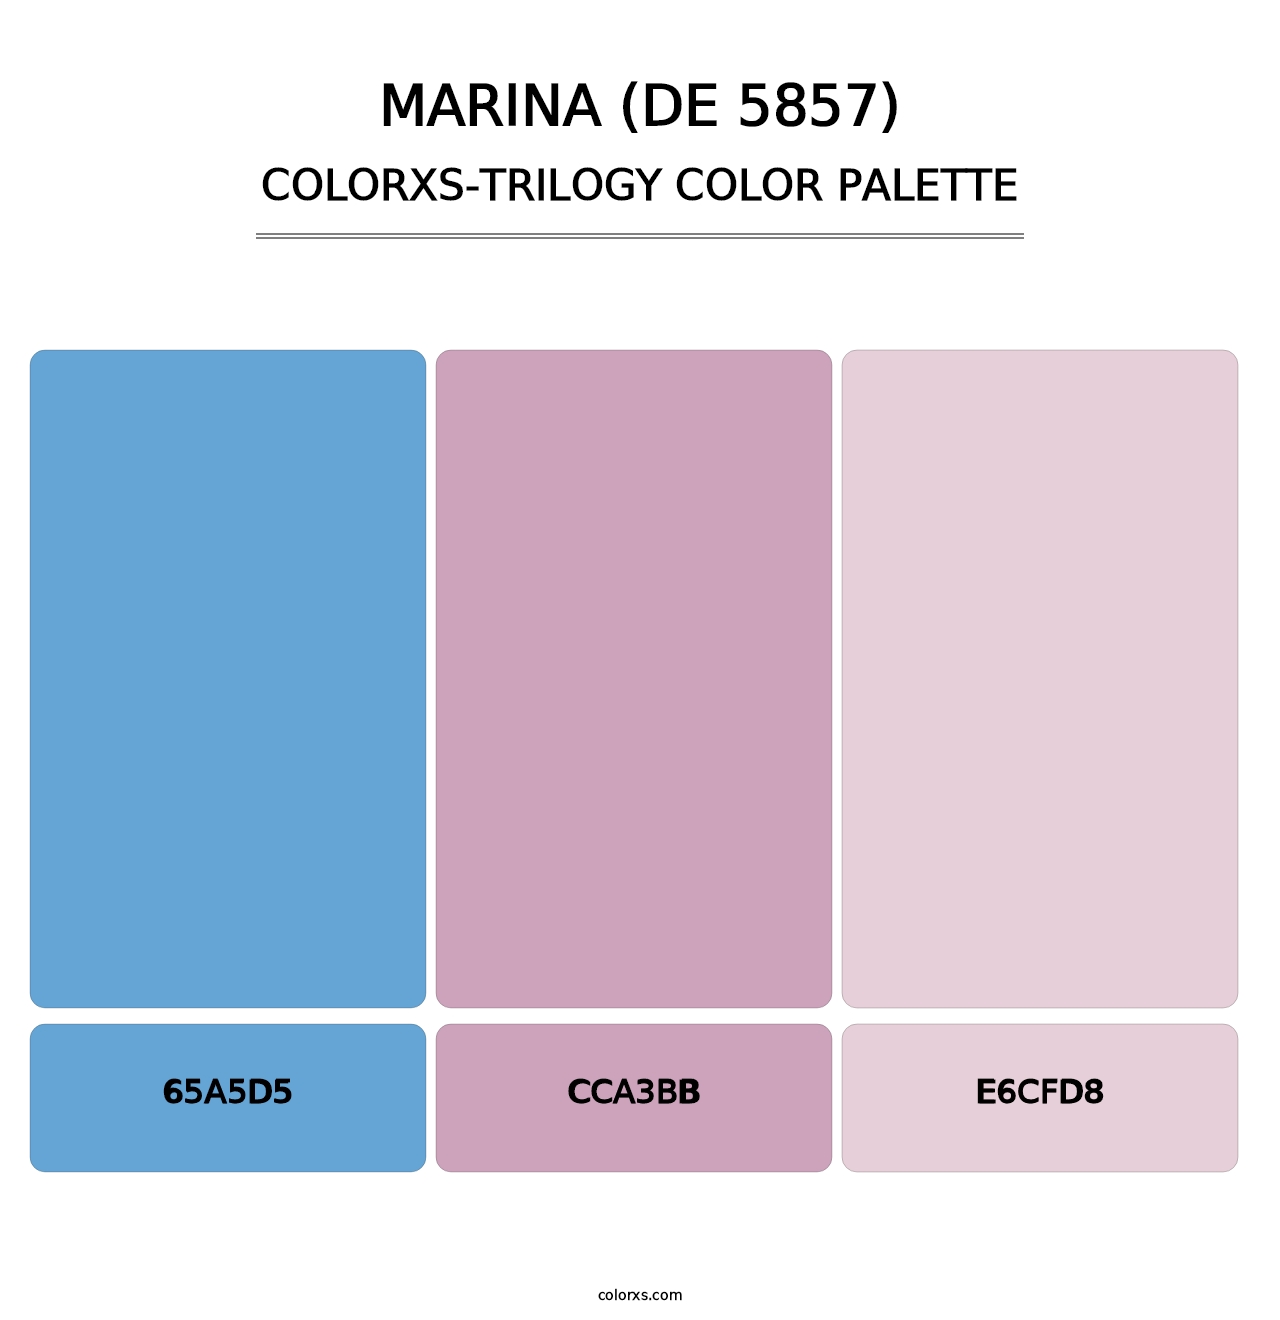 Marina (DE 5857) - Colorxs Trilogy Palette